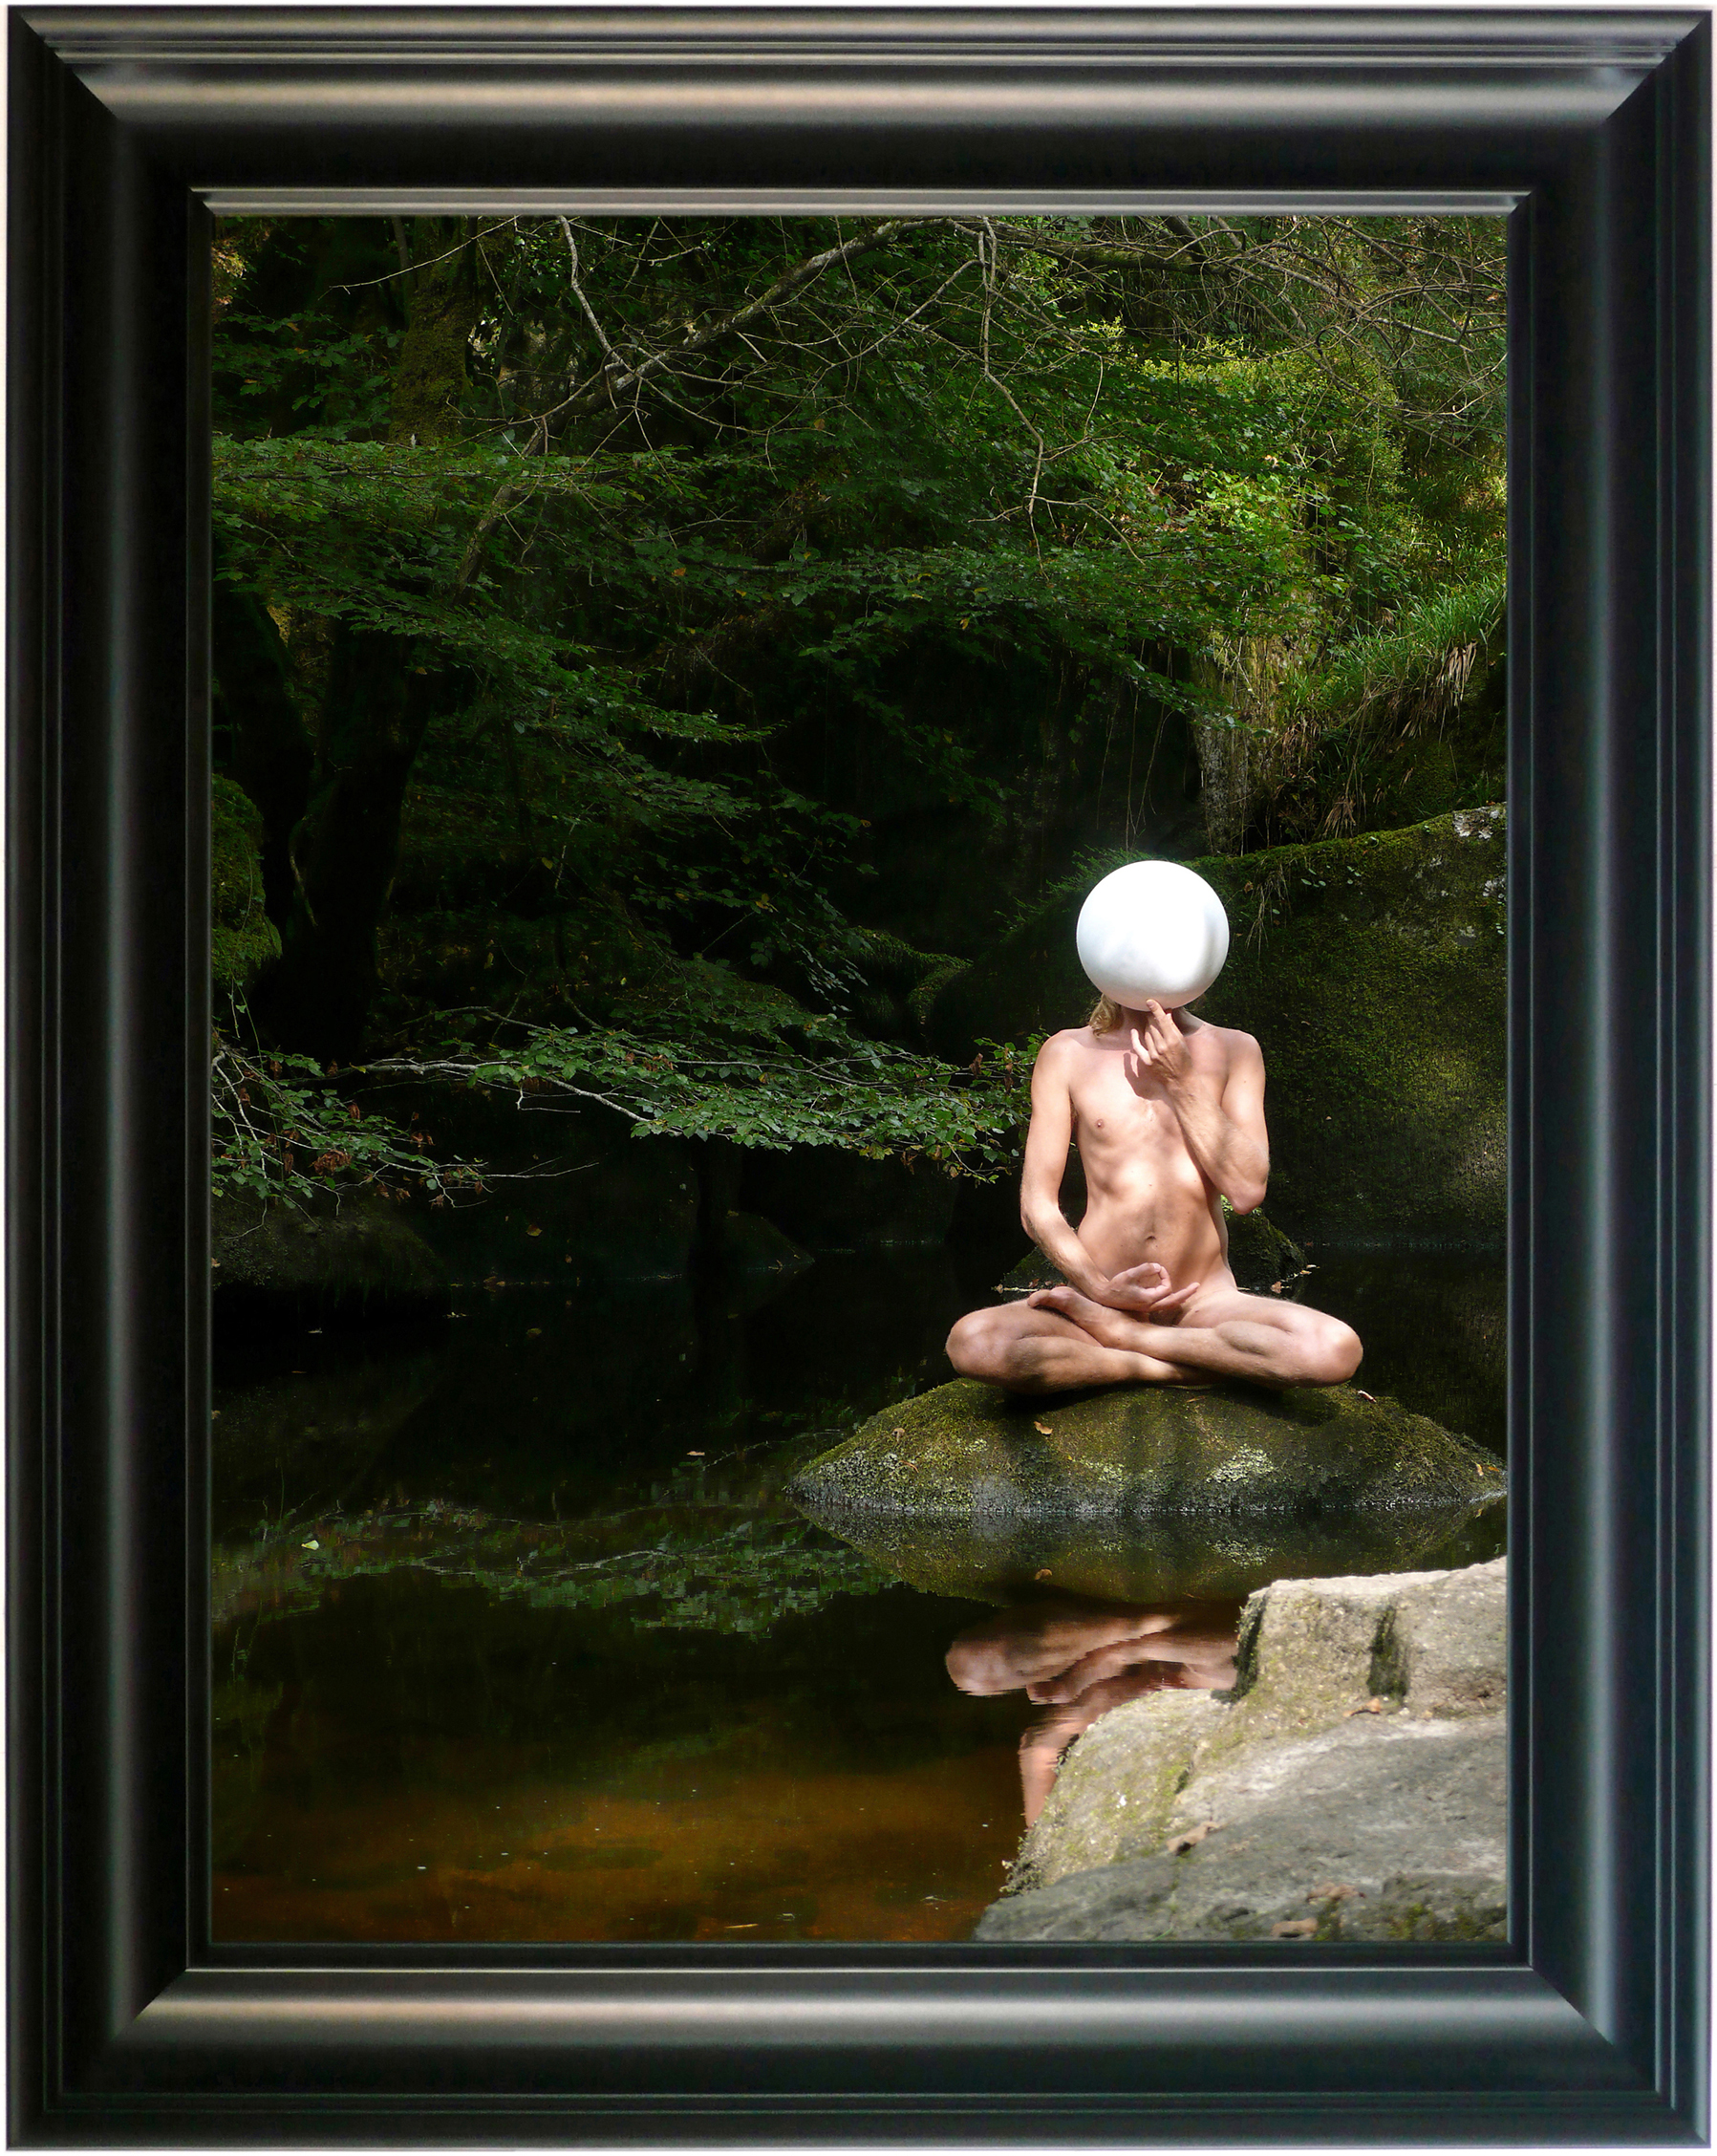 Wido Blokland - Narcissus [La Mare Aux Fées 1], 2008